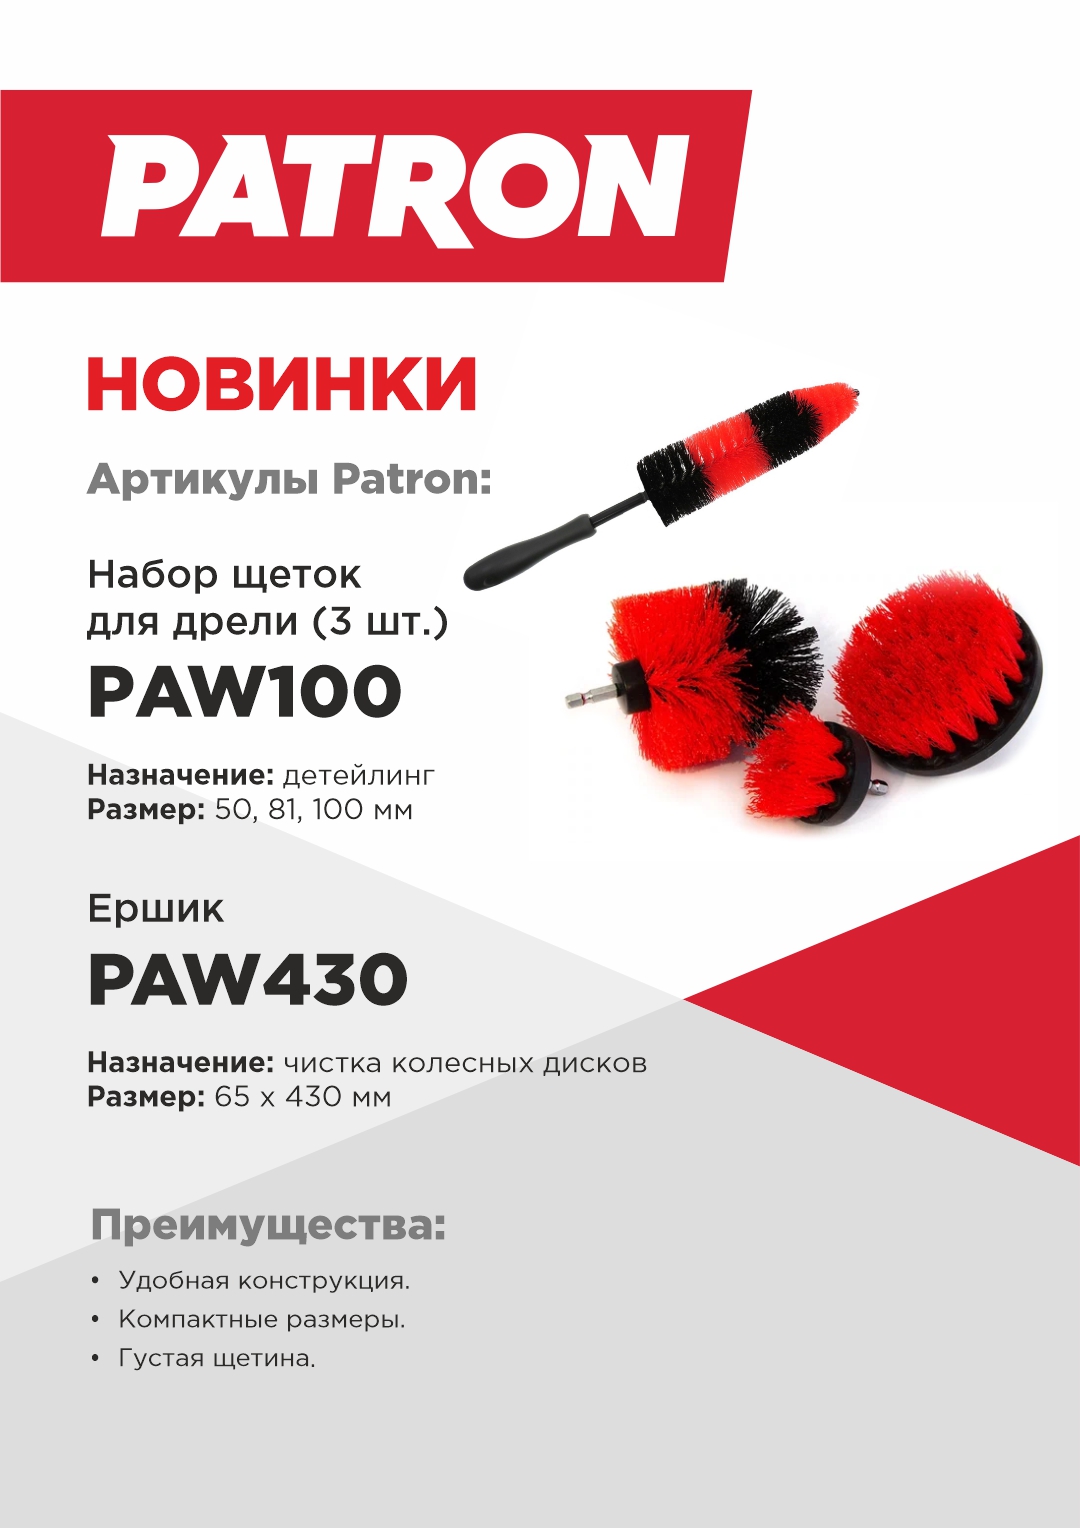 NEW_Patron_PAW100_PAW430 NEW